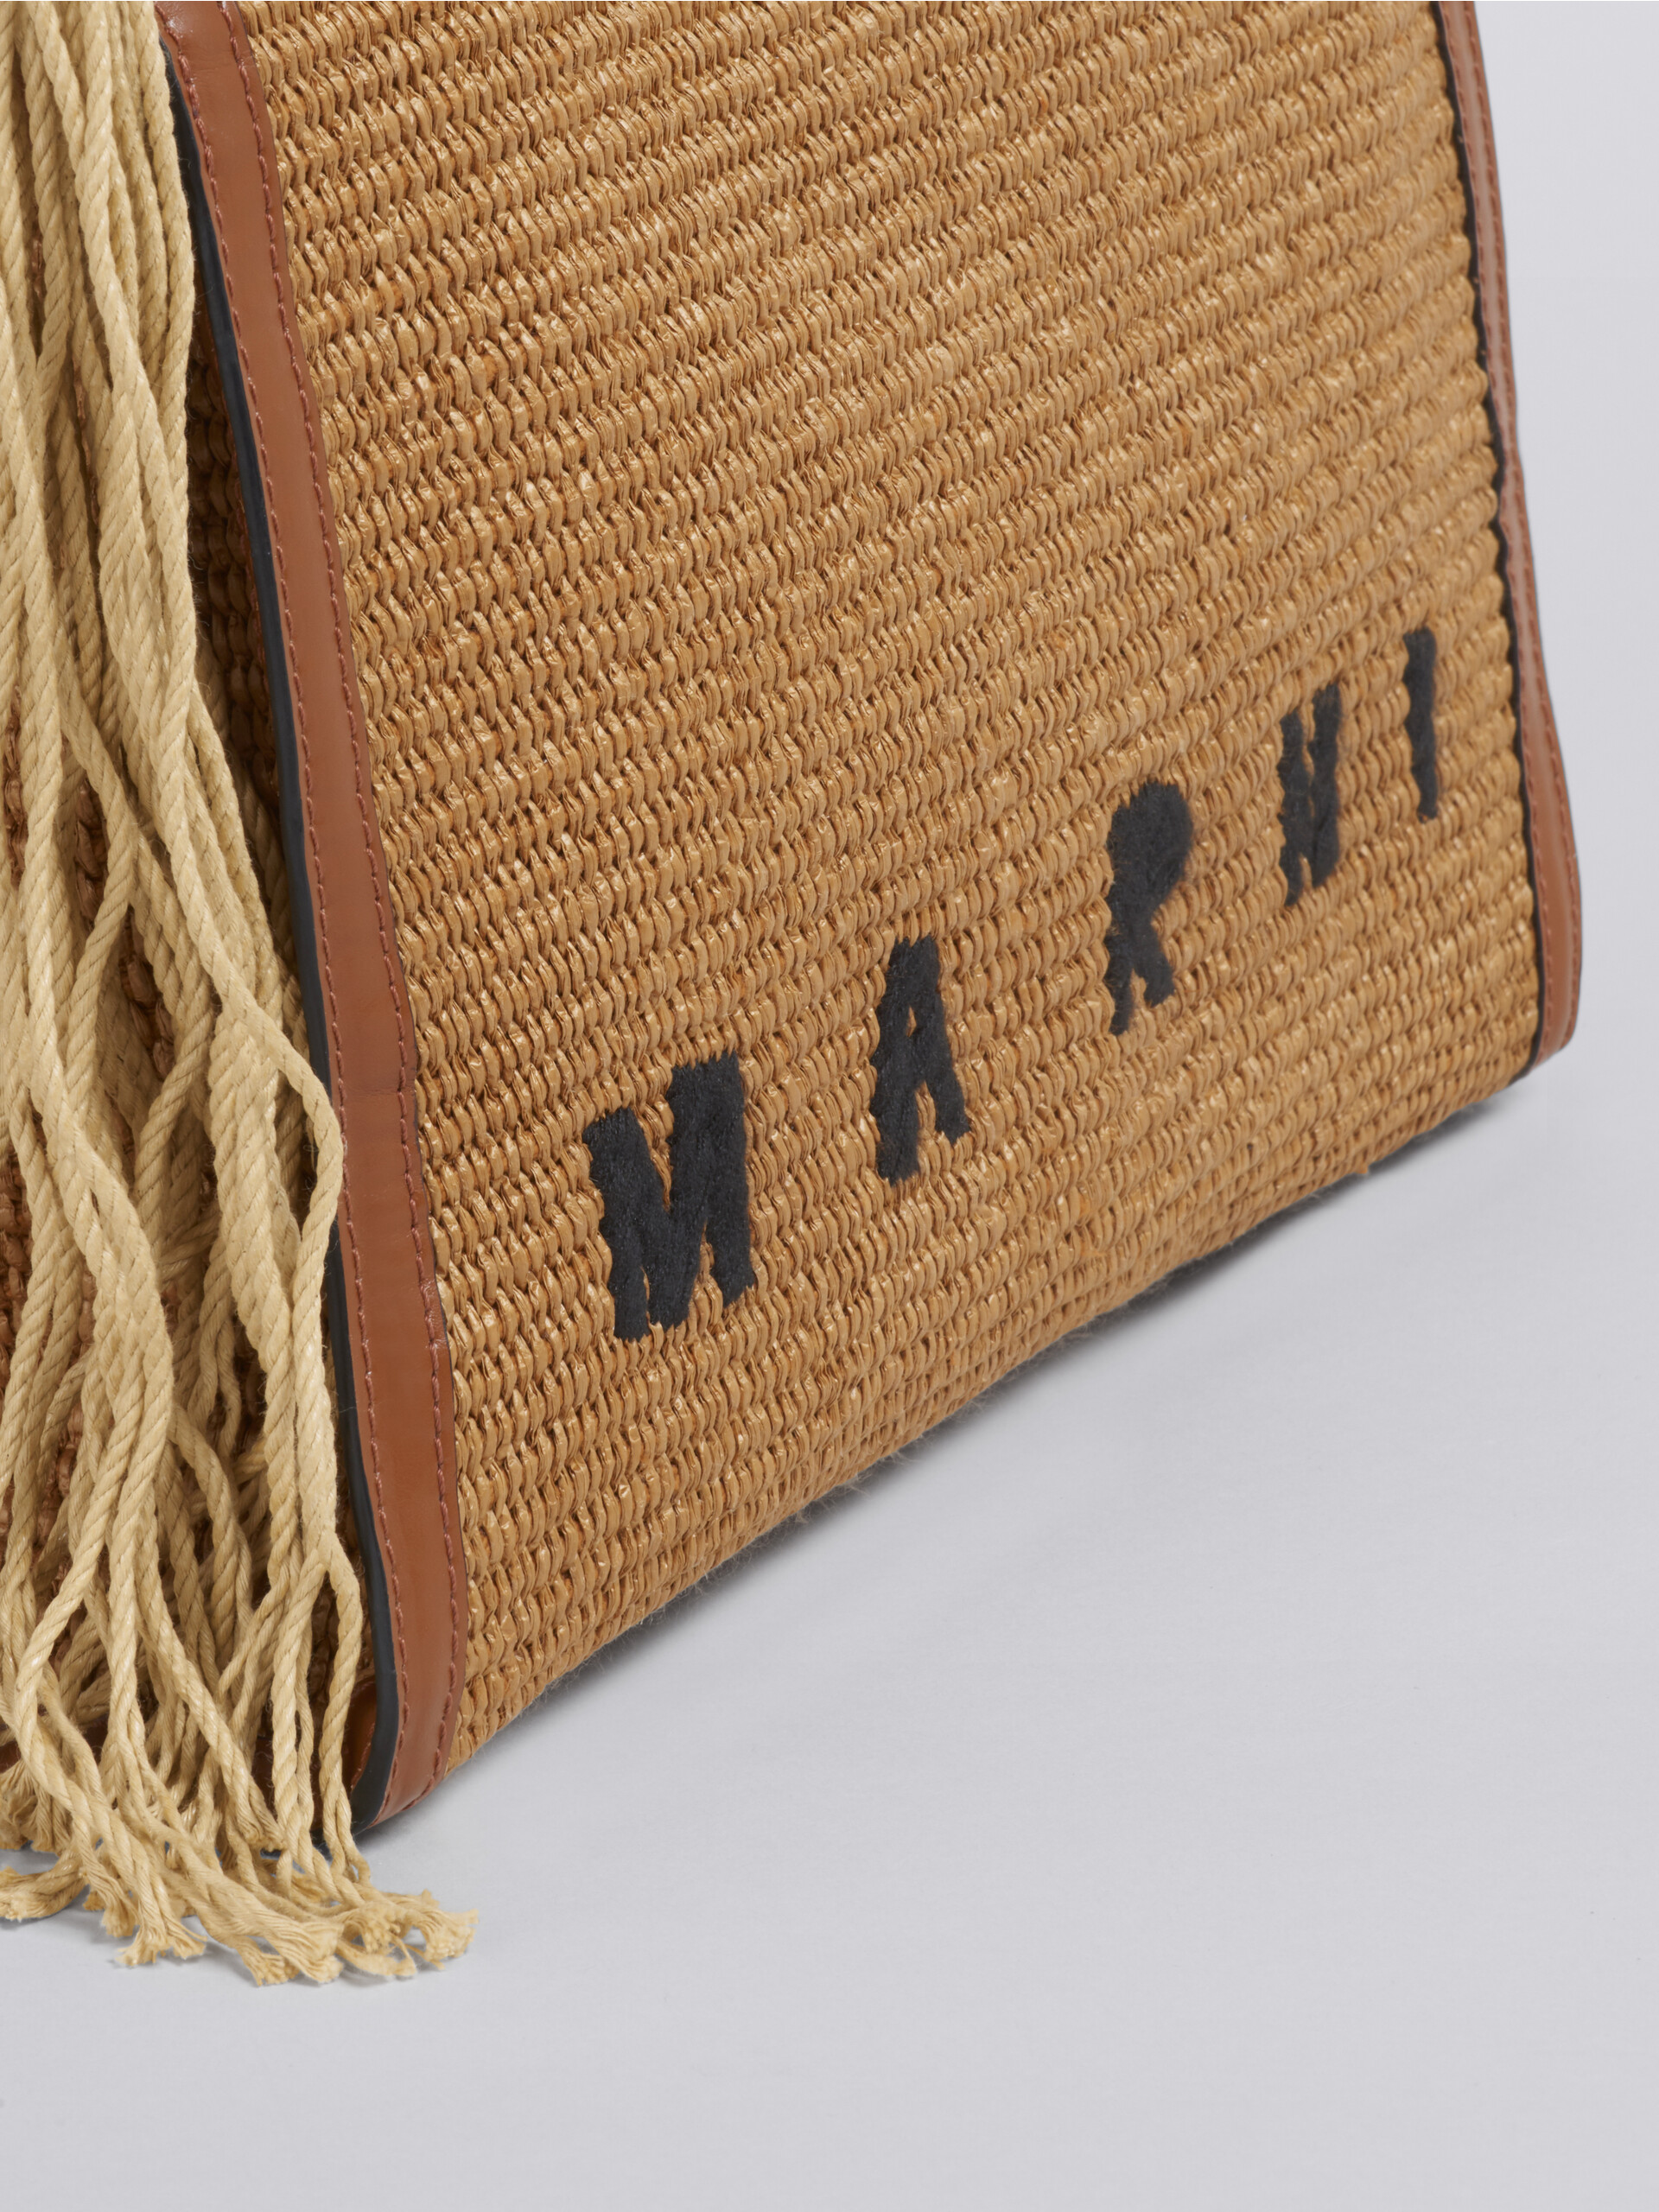 Tasche Marcel Summer mit Seilgriffen - Handtaschen - Image 5